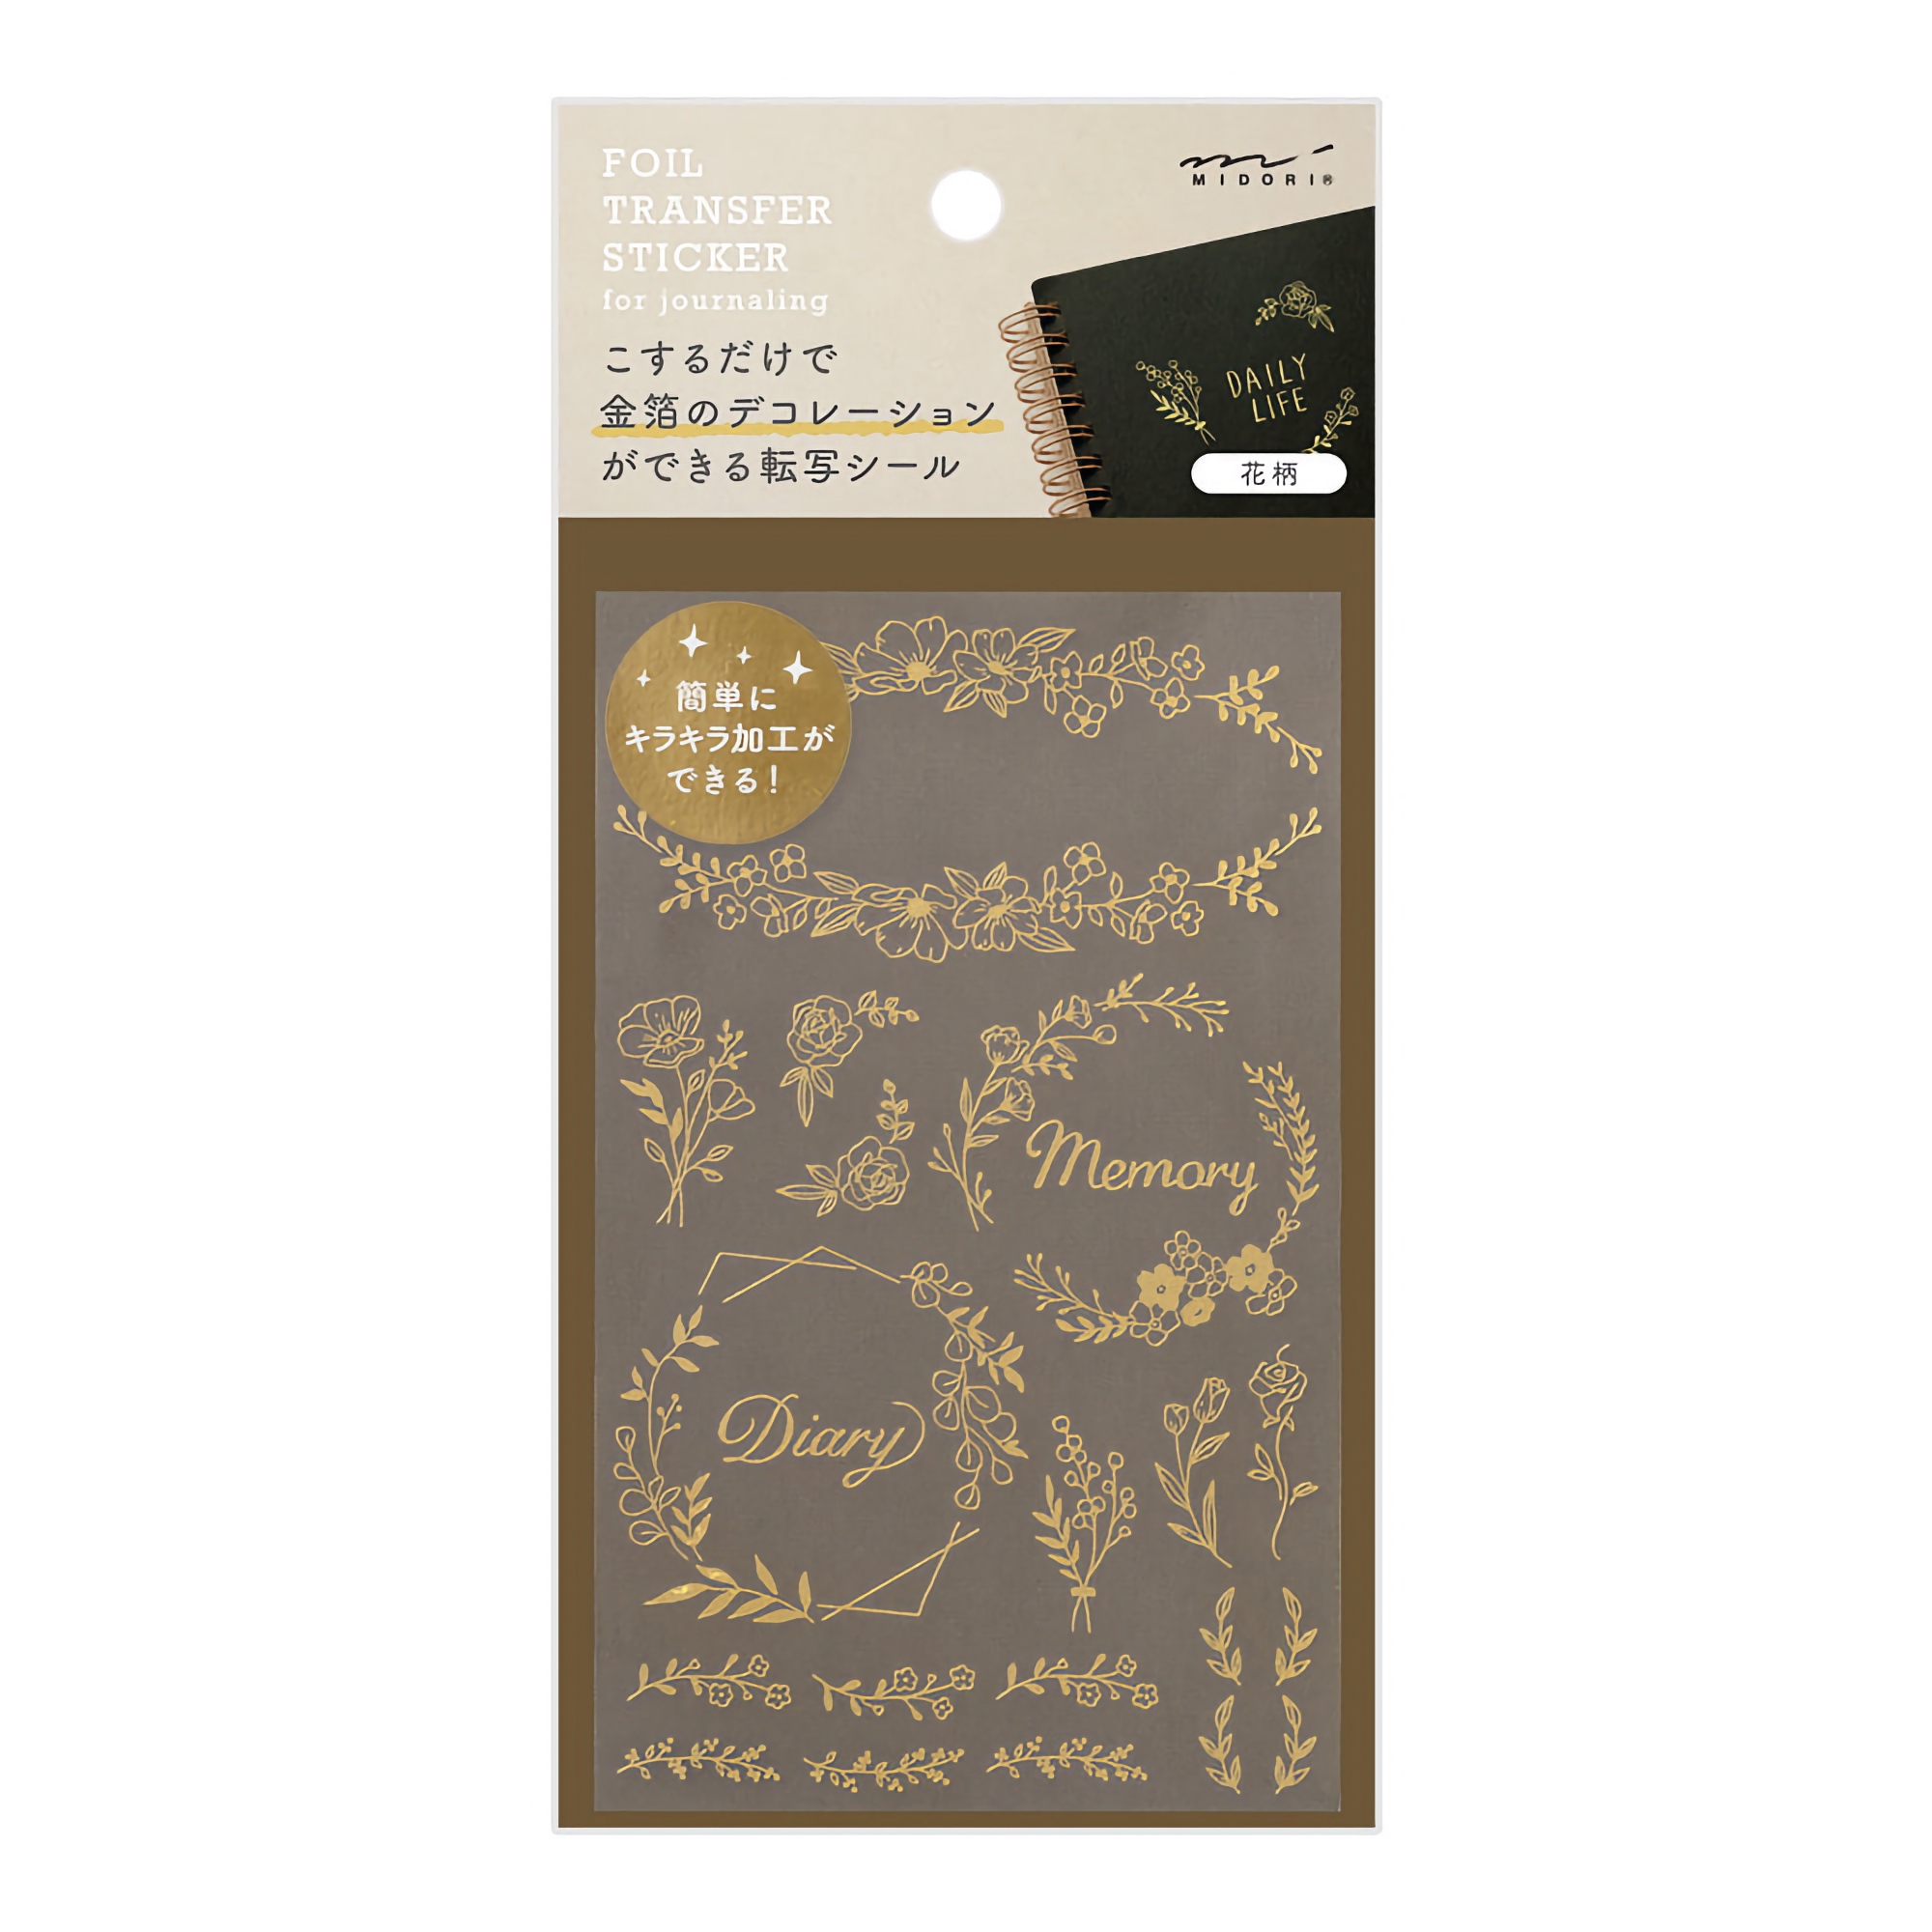 Midori Transfer Sticker Foil Coffee